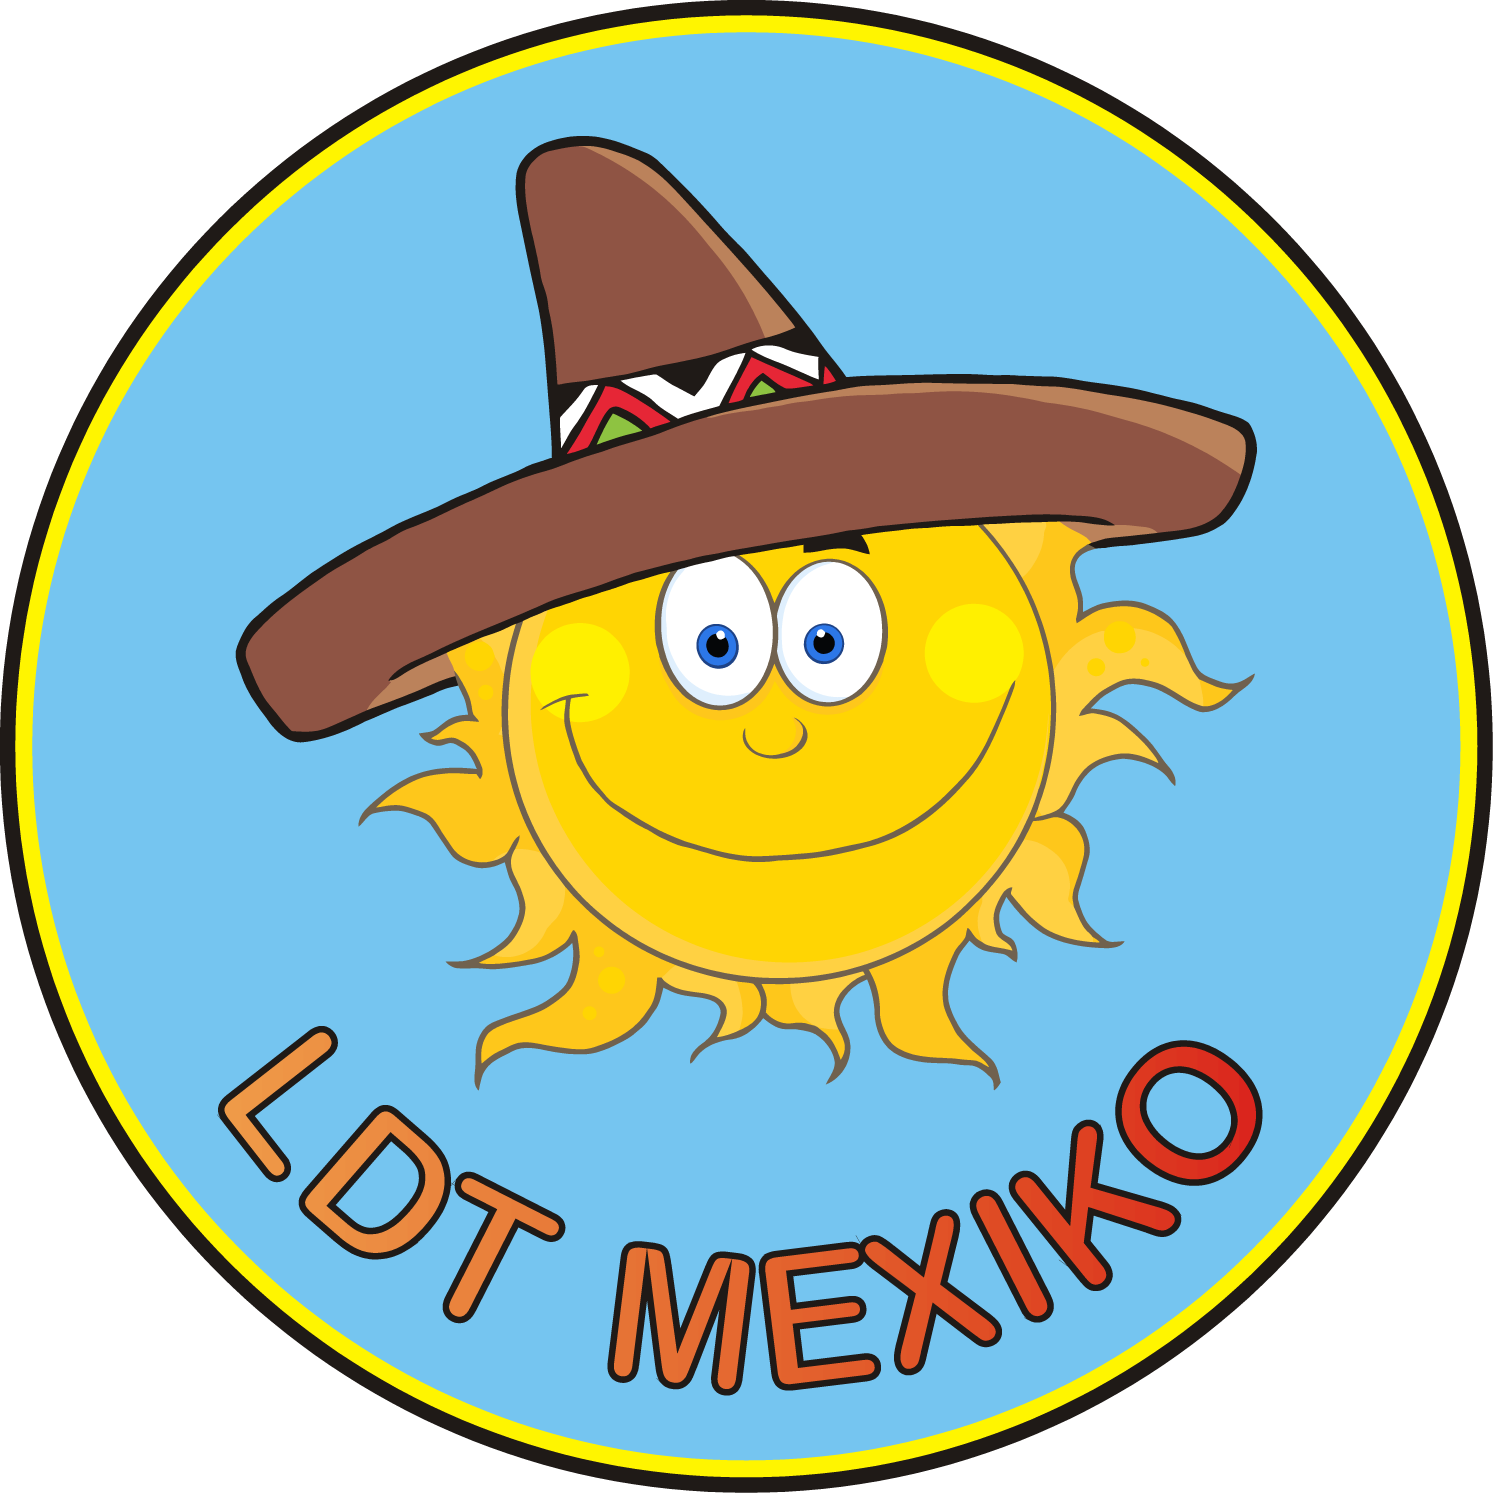 Letní Tábor Mexiko Summer Camp Mexico Accommodation - Letní Tábor Mexiko Summer Camp Mexico Accommodation (1493x1493)